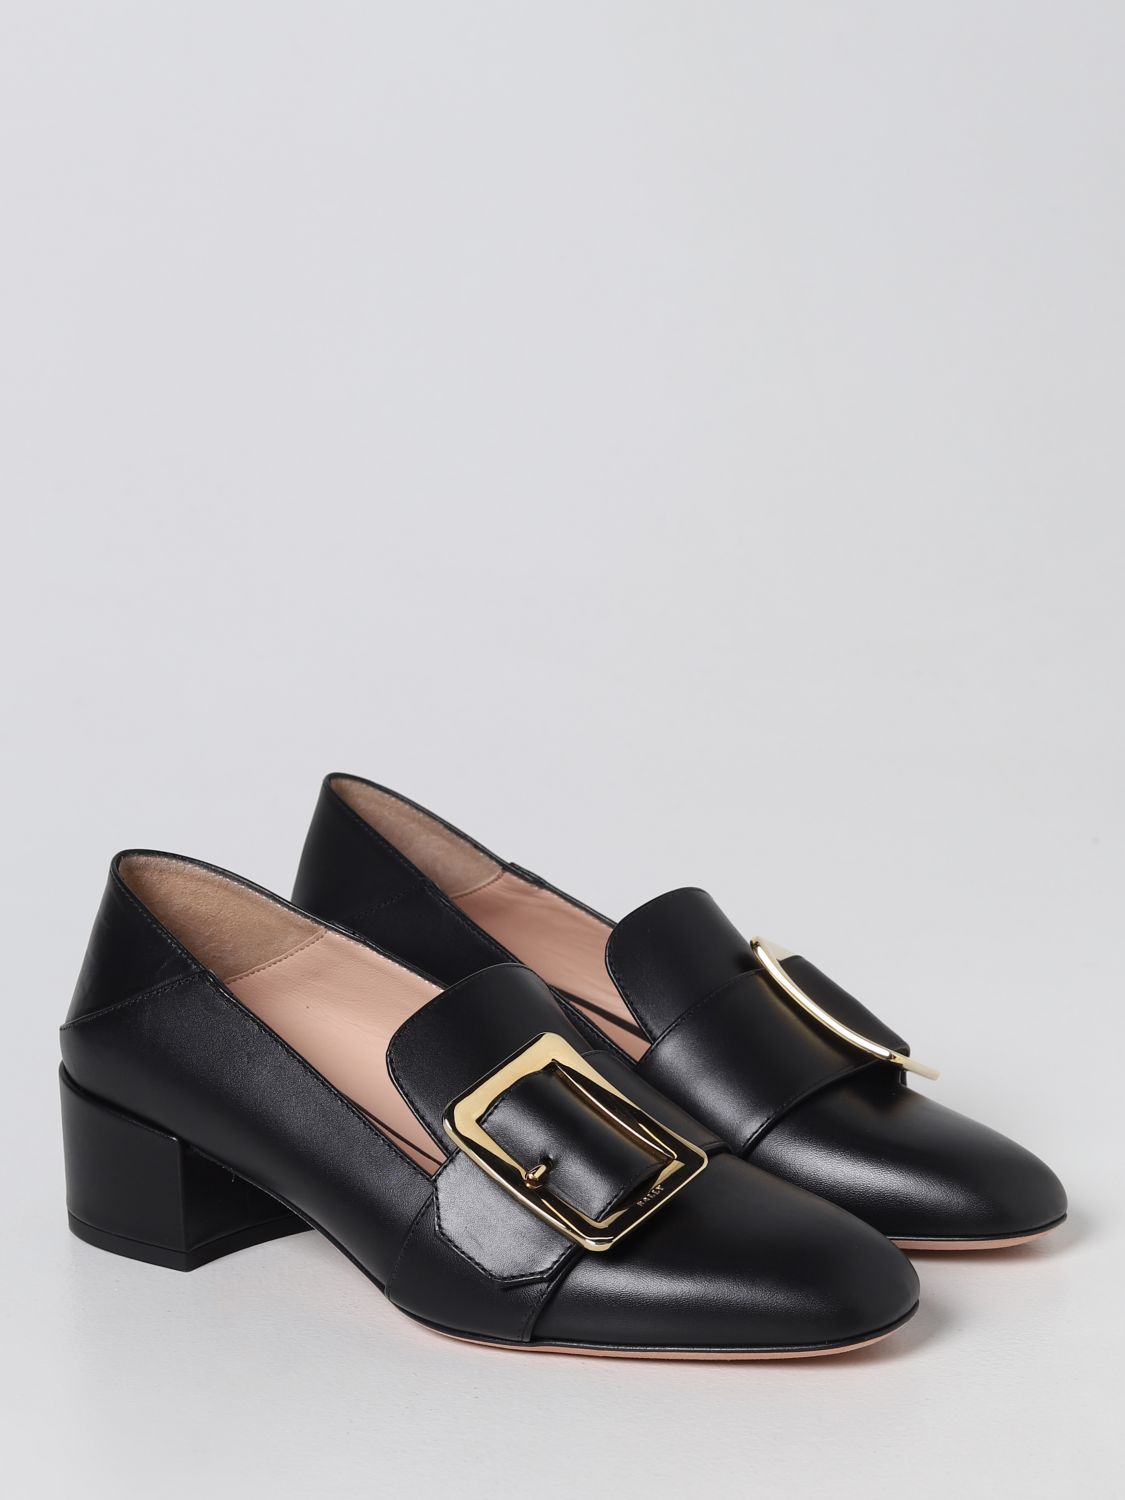 BALLY: Zapatos de tacón para mujer, Negro Zapatos De TacÓN Bally en línea en GIGLIO.COM